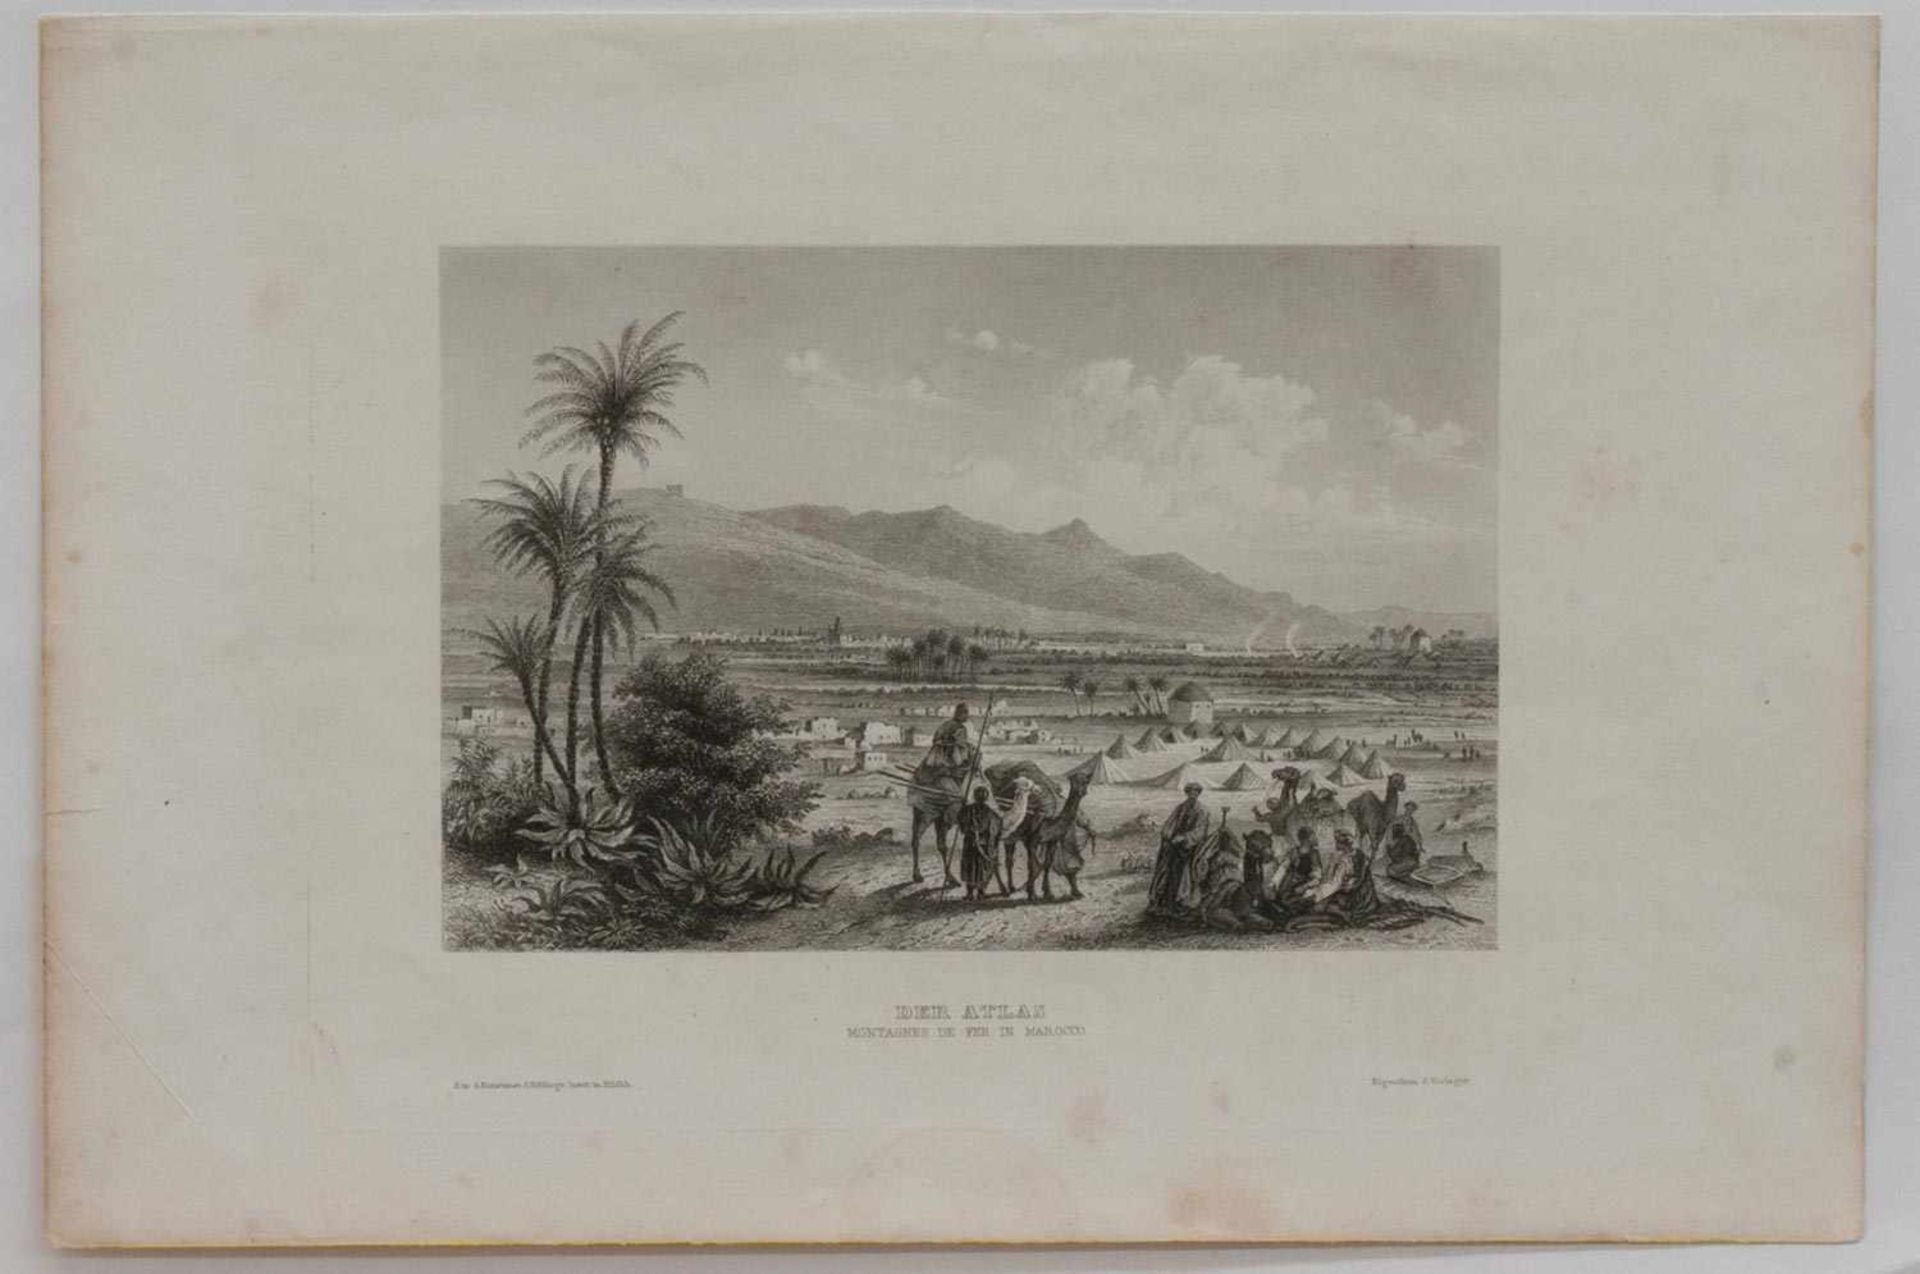 Stahlstich "Der Atlas" - MaroccoStahlstich um 1850, verlegt im Bibliografischen Institut